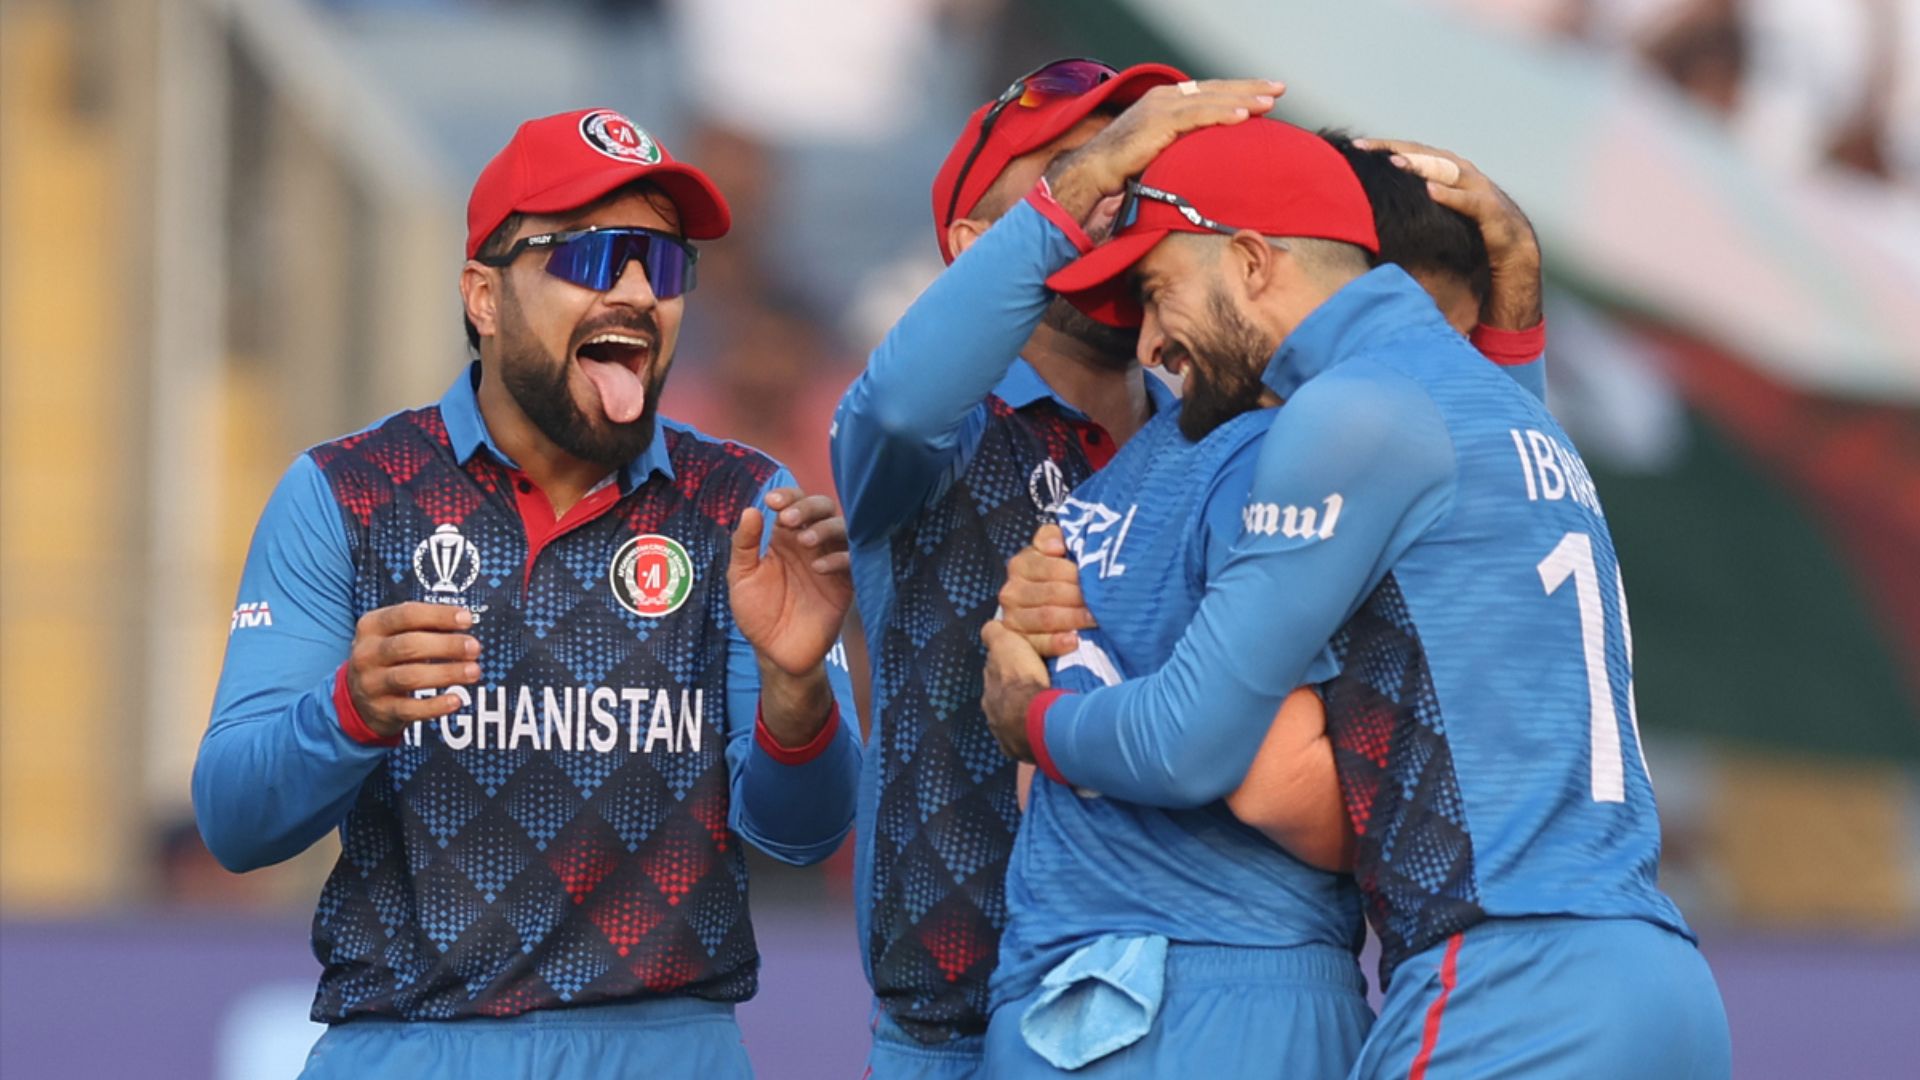 SL vs AFG: इंग्लैंड, पाकिस्तान के बाद अफगानिस्तान ने श्रीलंका को हराया